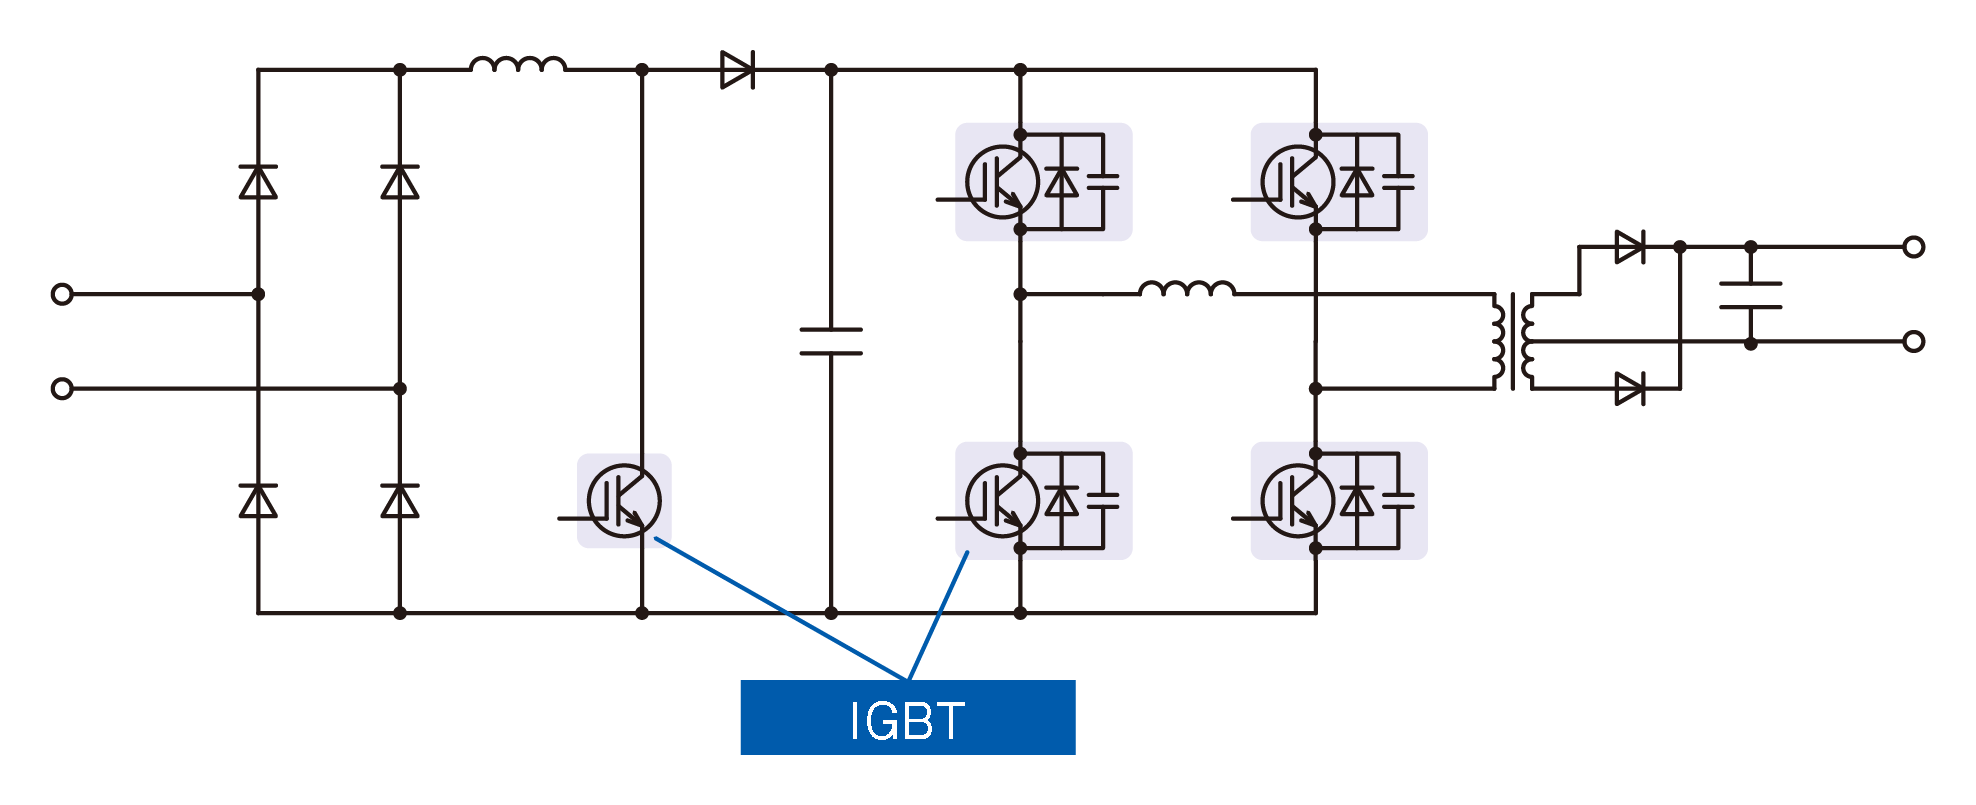 Figure 2. Soft switching type (ZVS)